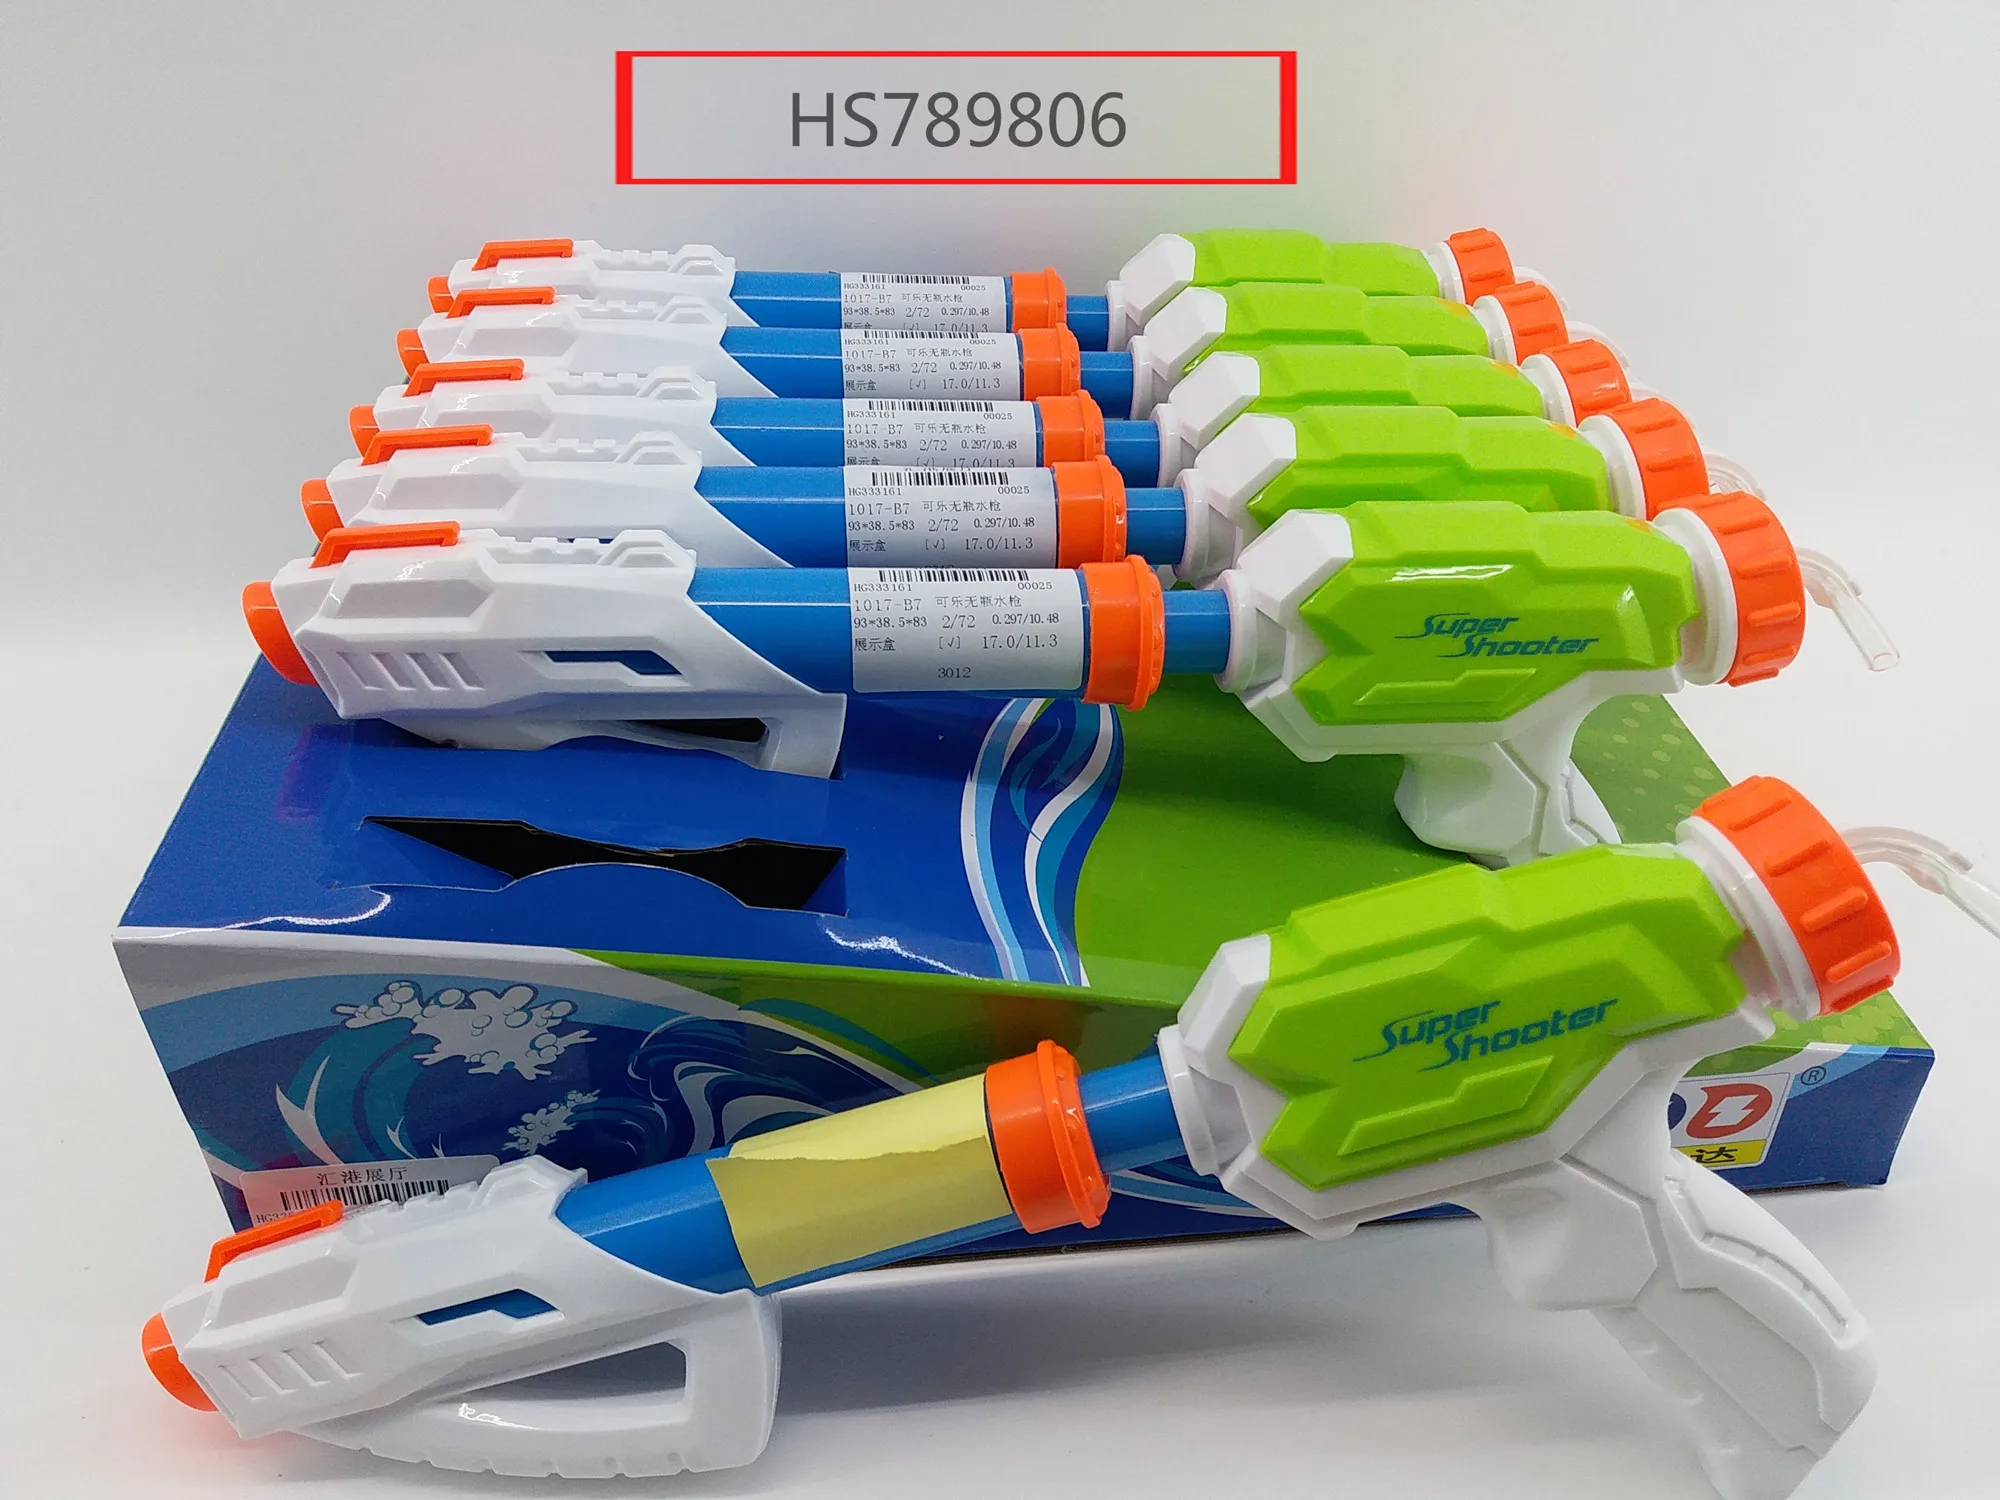 HS789806, Huwsin Toys, Water Gun